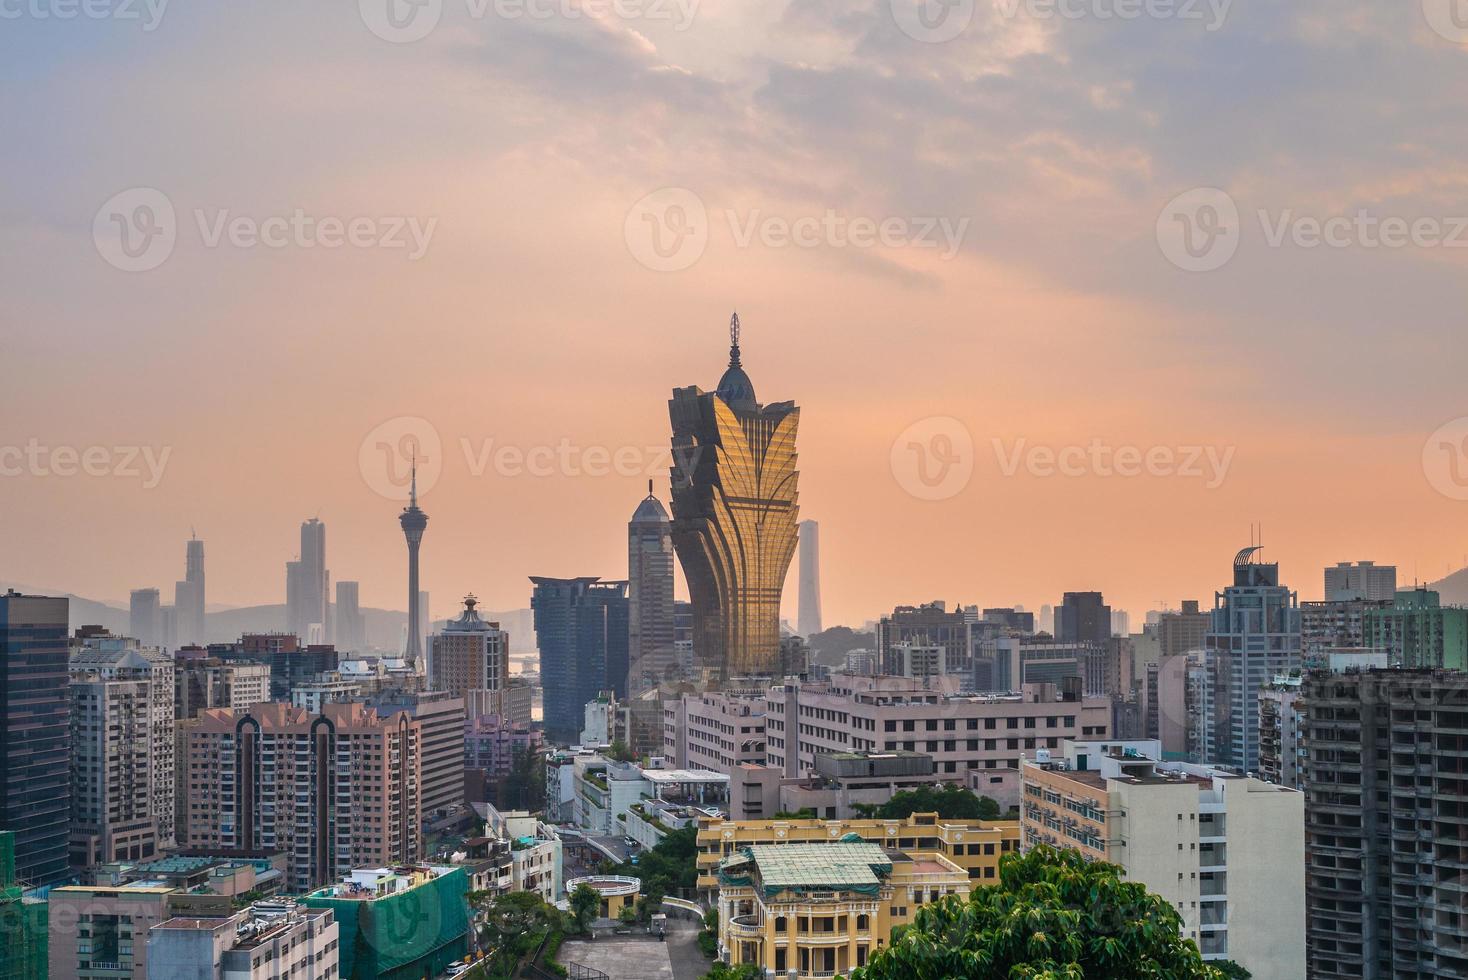 paisagem urbana de macau na china foto